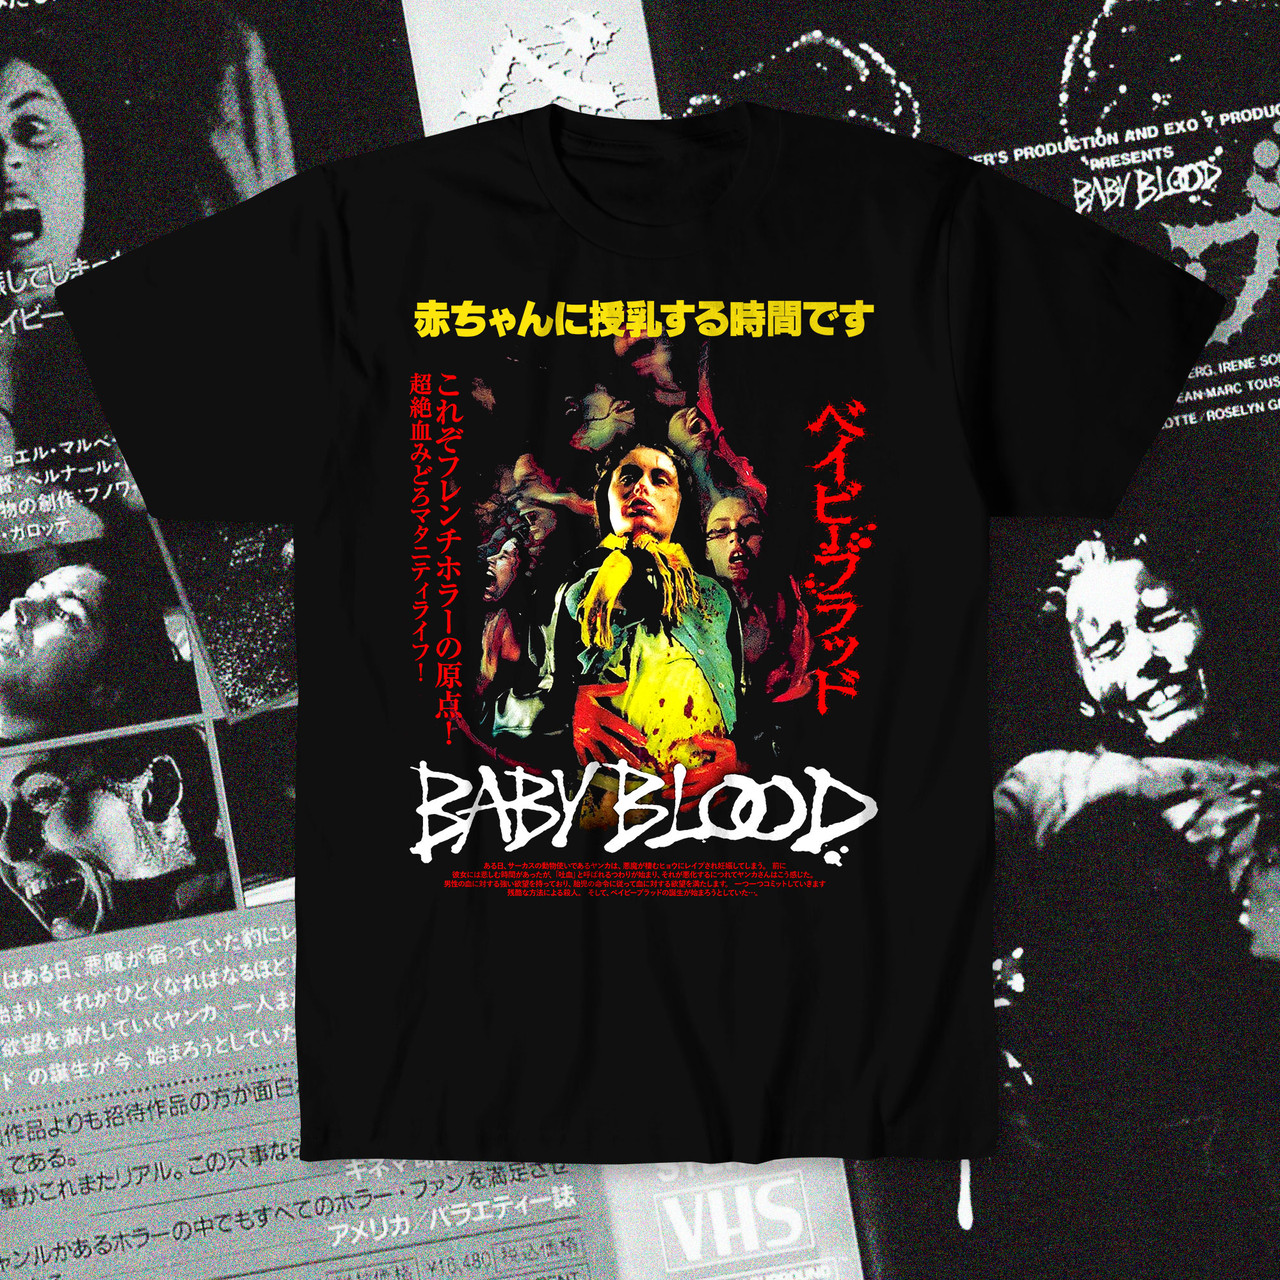 Baby Blood / ベイビー・ブラッド